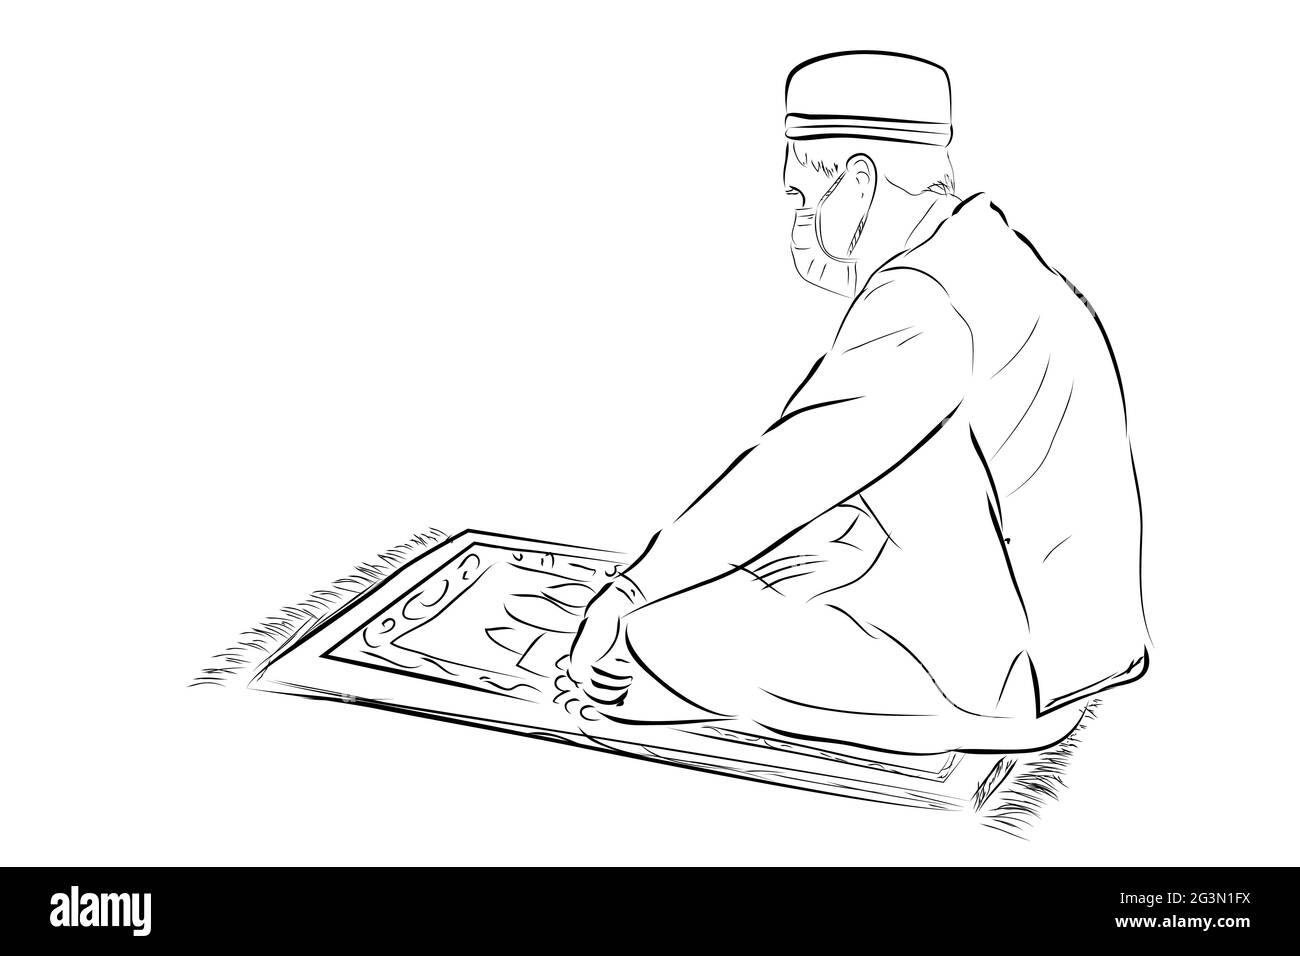 Disegno a mano vettoriale schizzo, uomo musulmano o islam, usando maschera, siediti al tappetino di preghiera Illustrazione Vettoriale